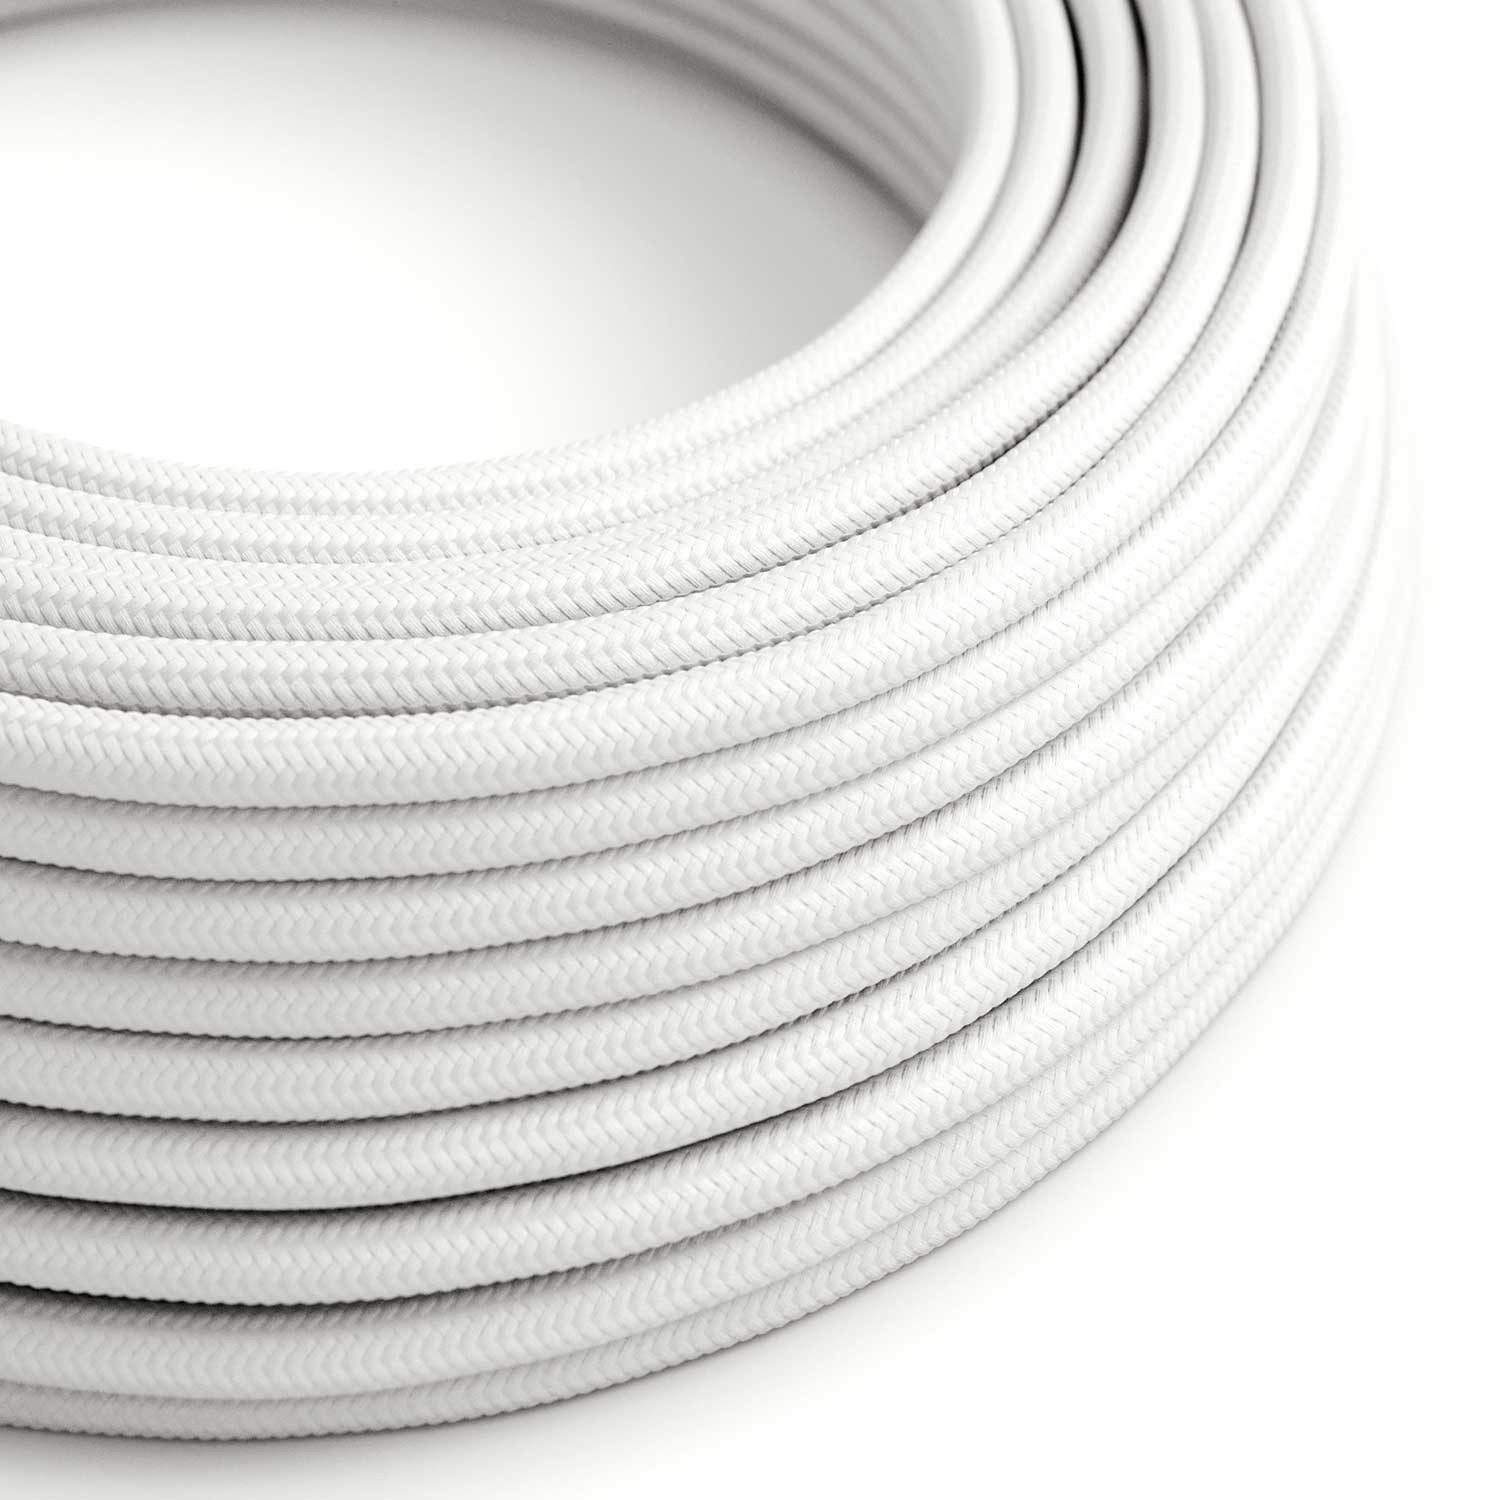 Ultra Zachte siliconen elektrische kabel met glanzende optisch witte stoffen voering - RM01 rond 2x0,75 mm